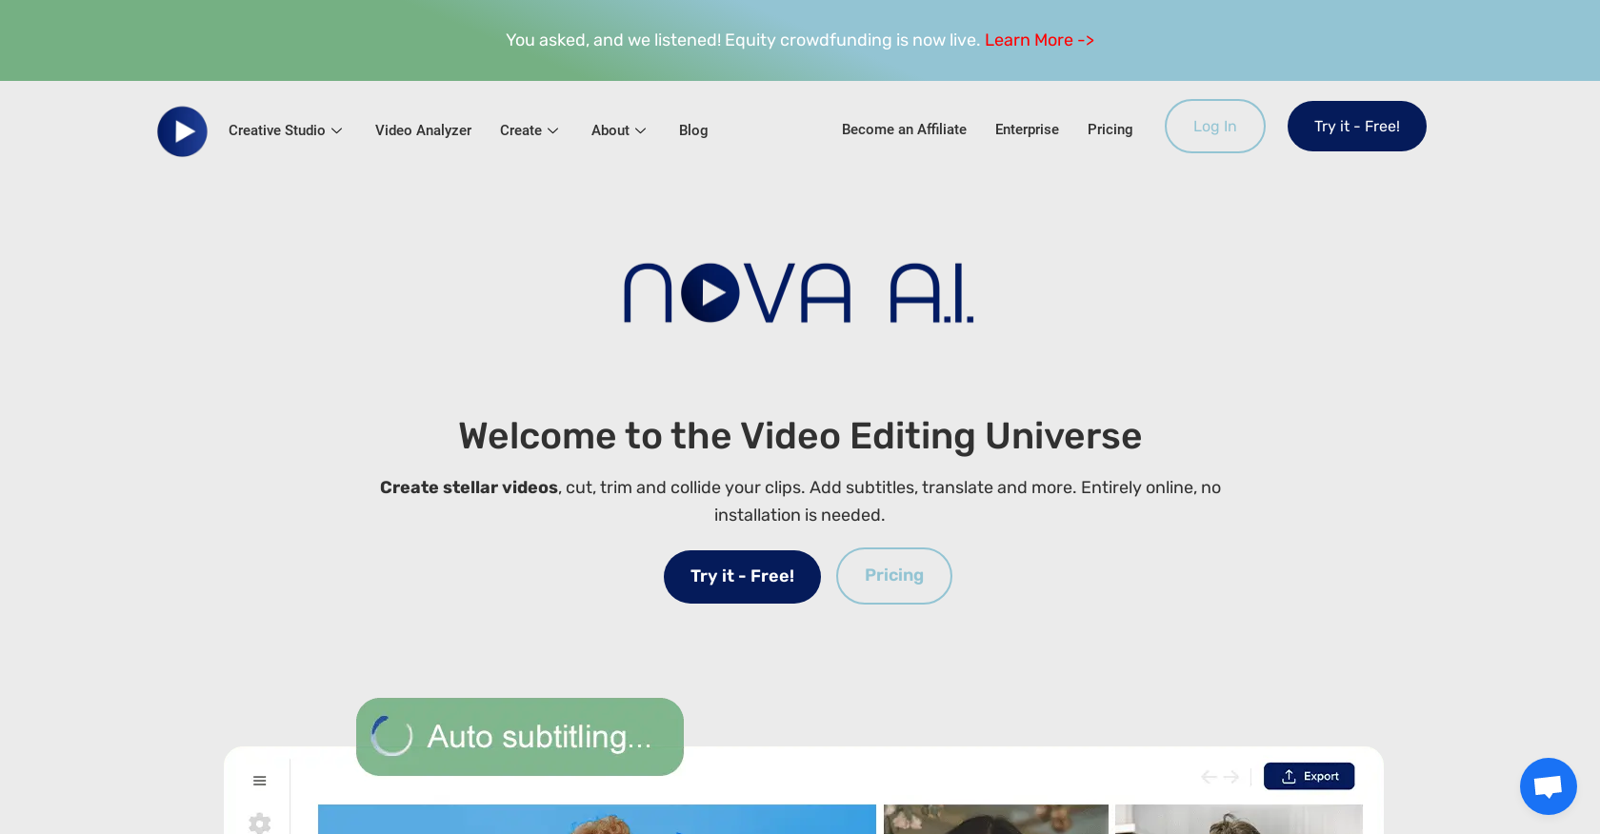 Nova A.I. website